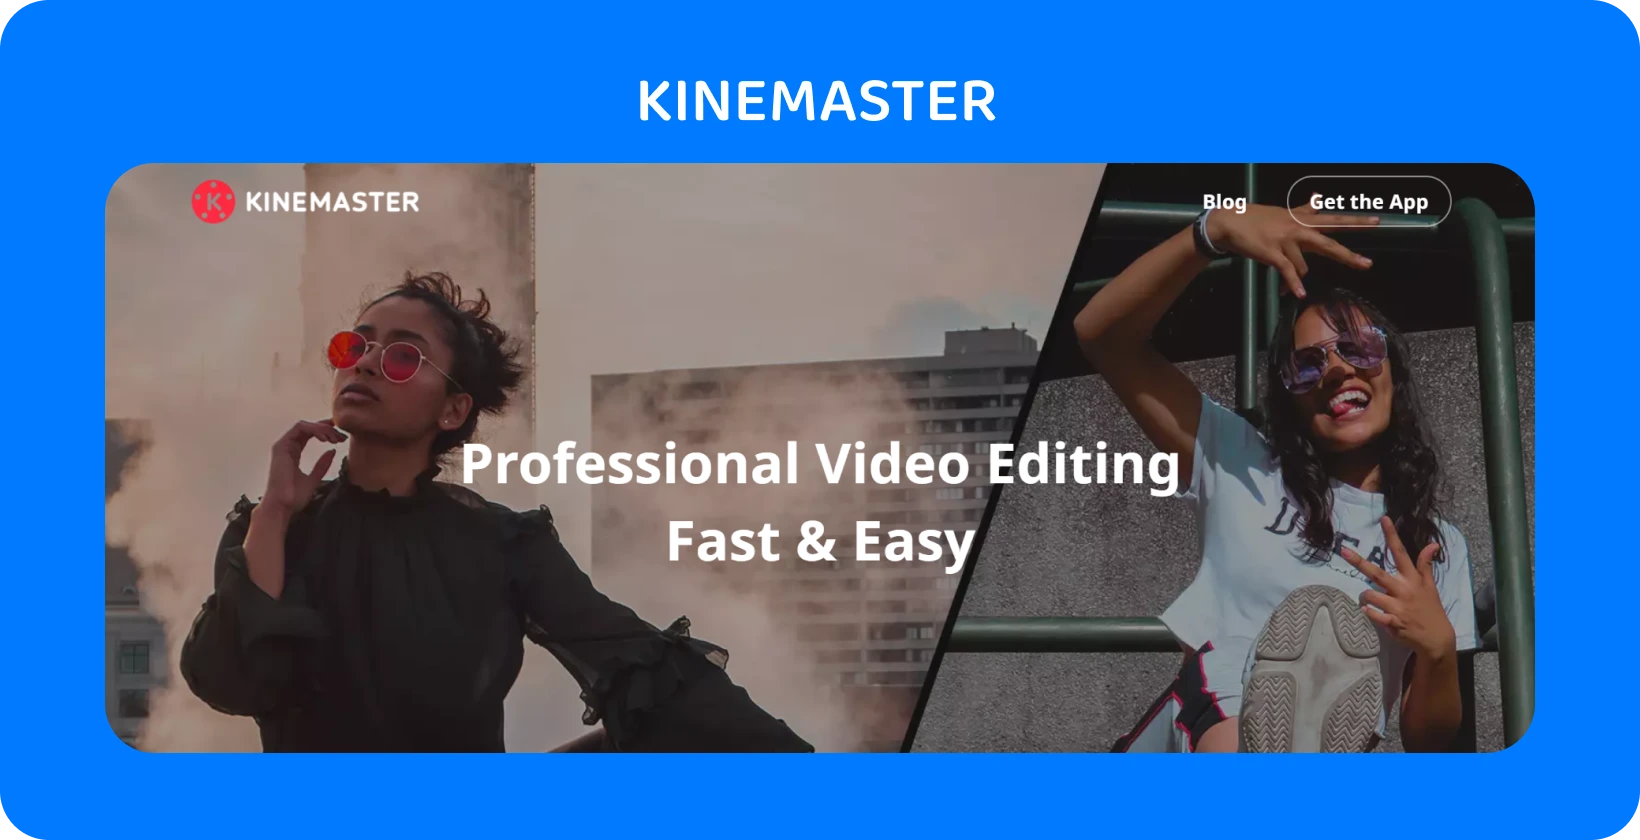 KineMaster реклама додатка з двома моделями, які позують, підкреслюючи професійне редагування відео, яке є швидким і простим.